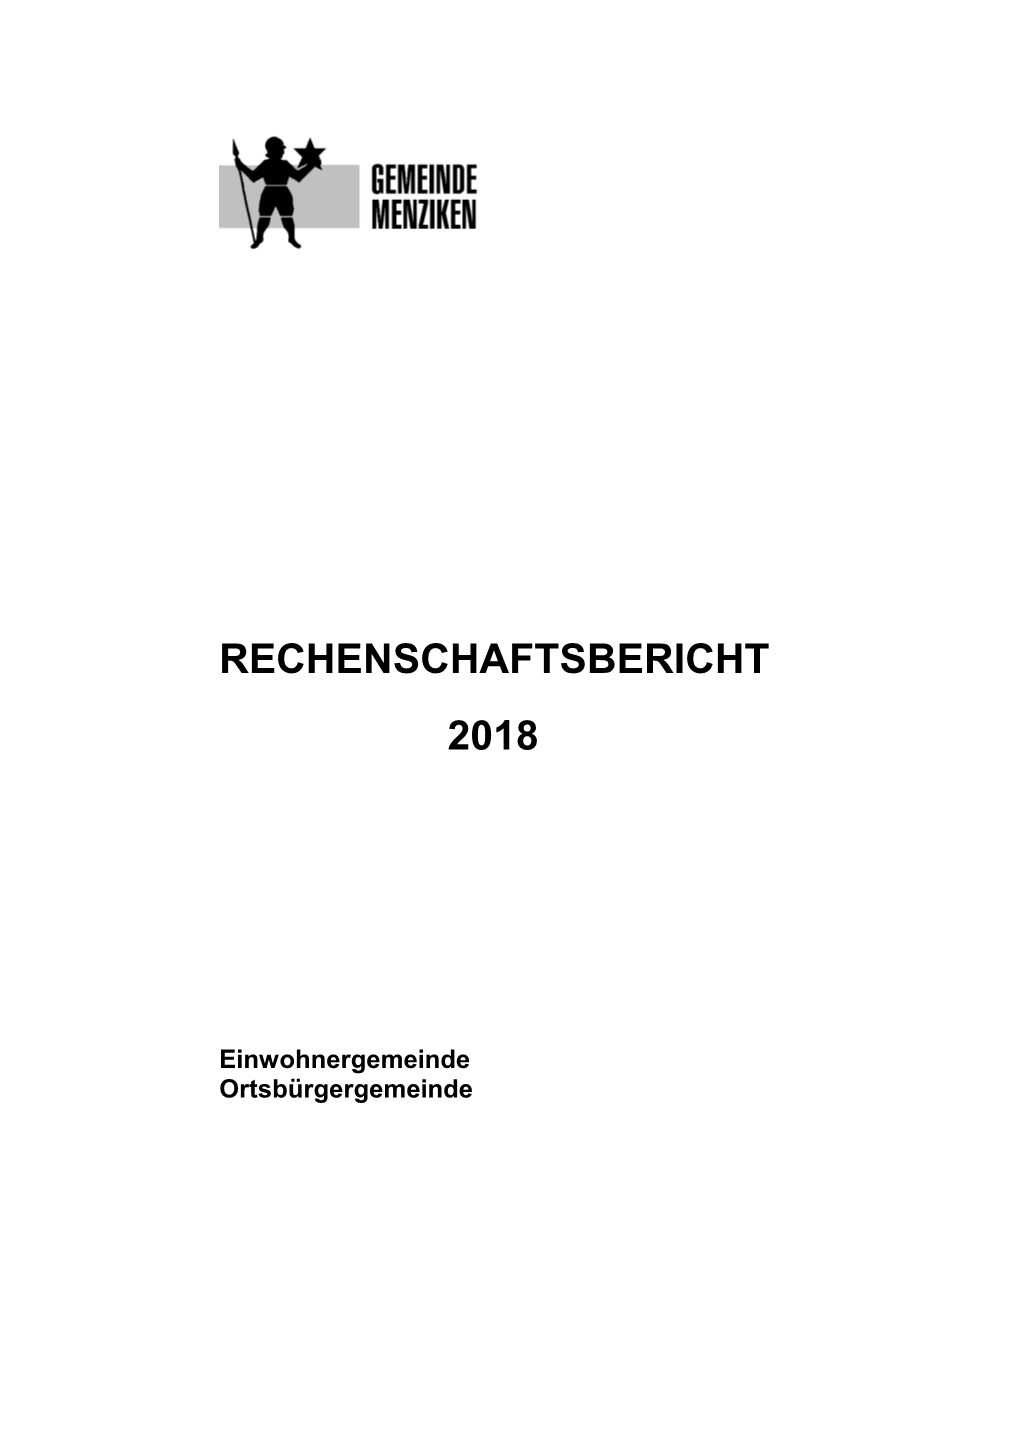 Rechenschaftsbericht 2018